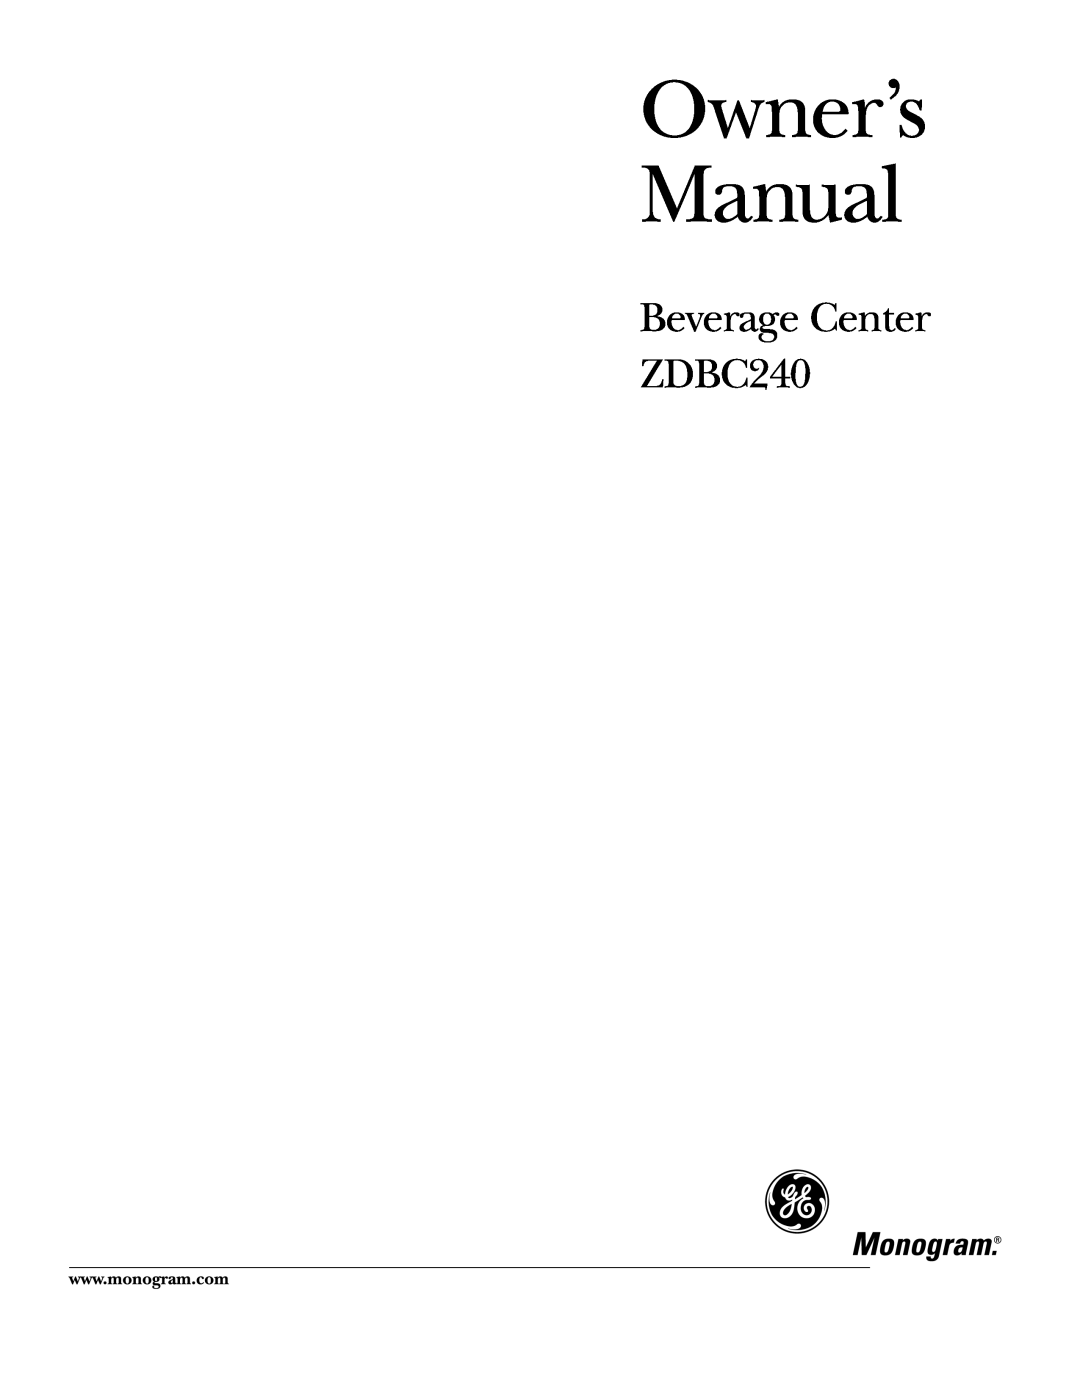 GE Monogram owner manual Beverage Center ZDBC240 